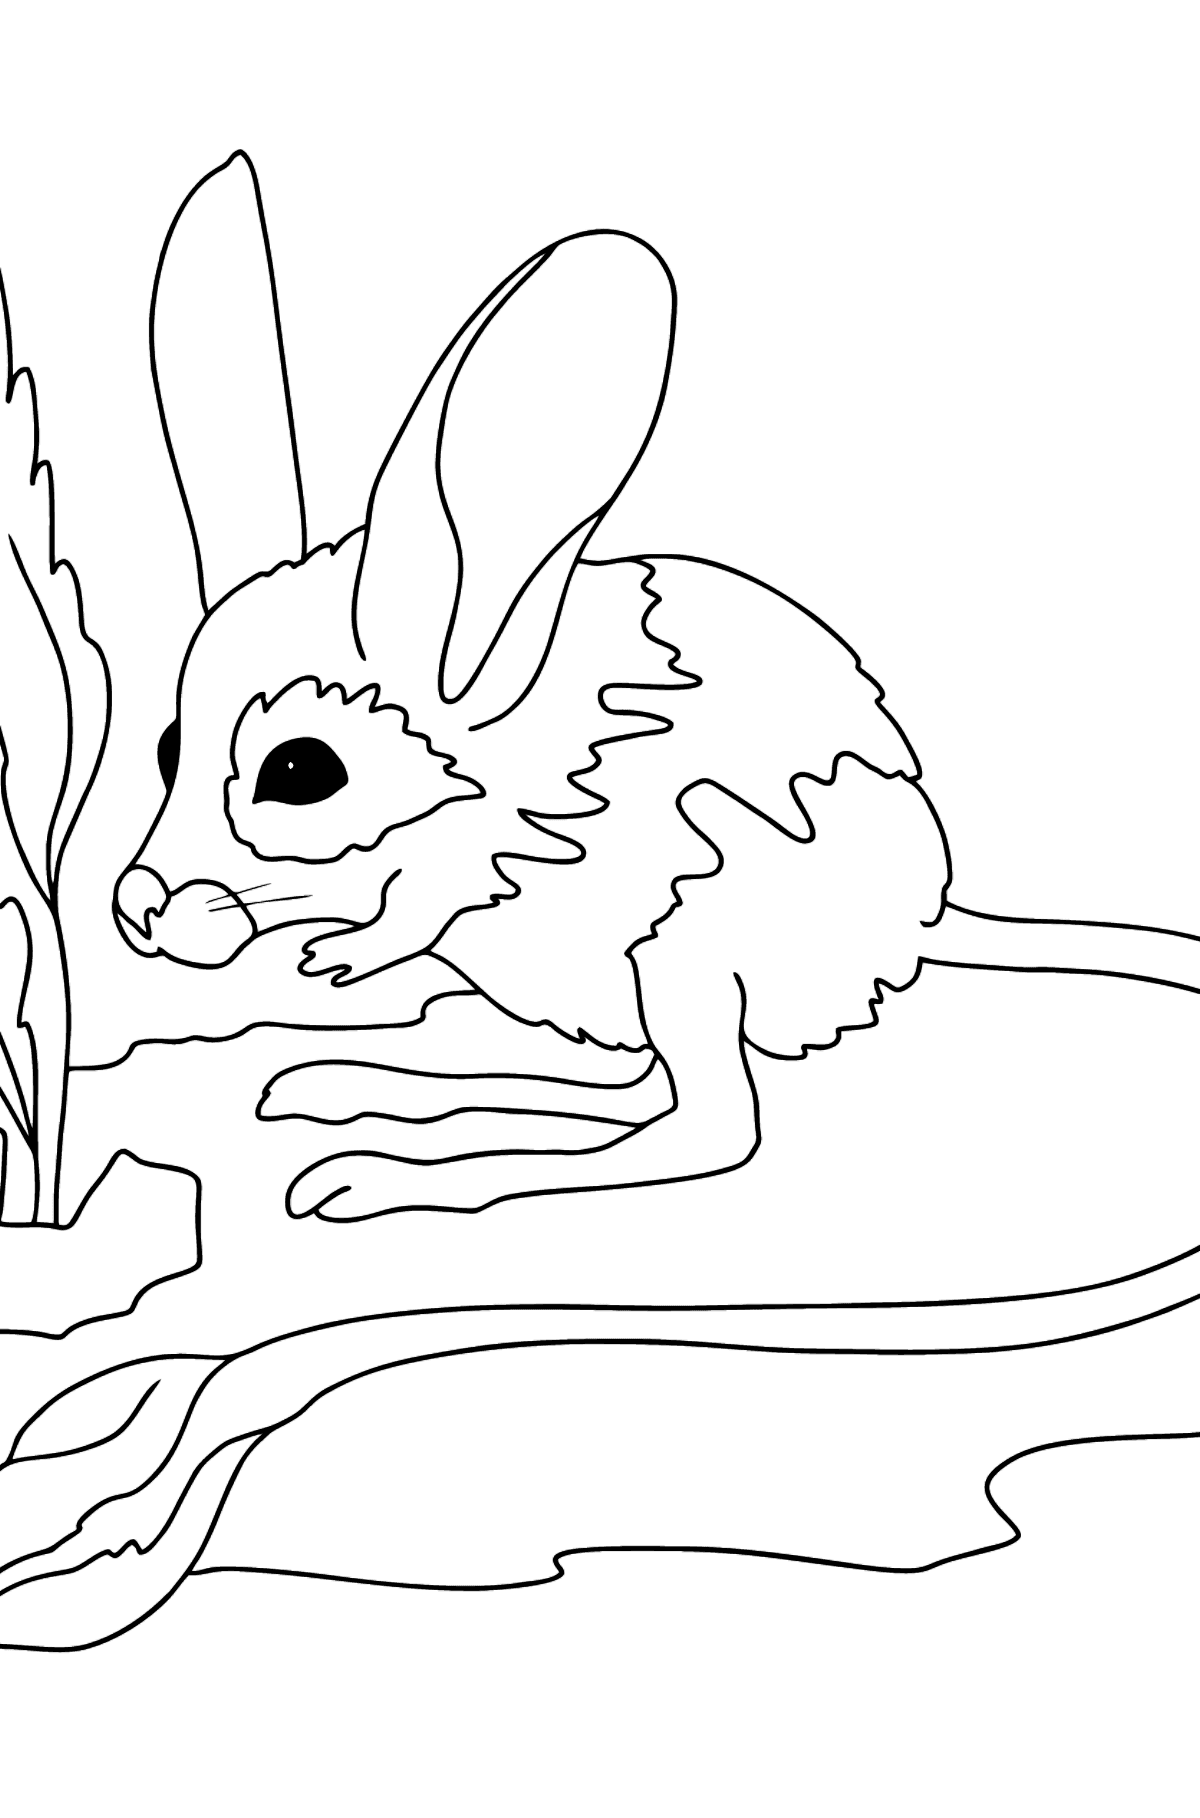 Boyama sayfası toprak tavşanı - Boyamalar çocuklar için